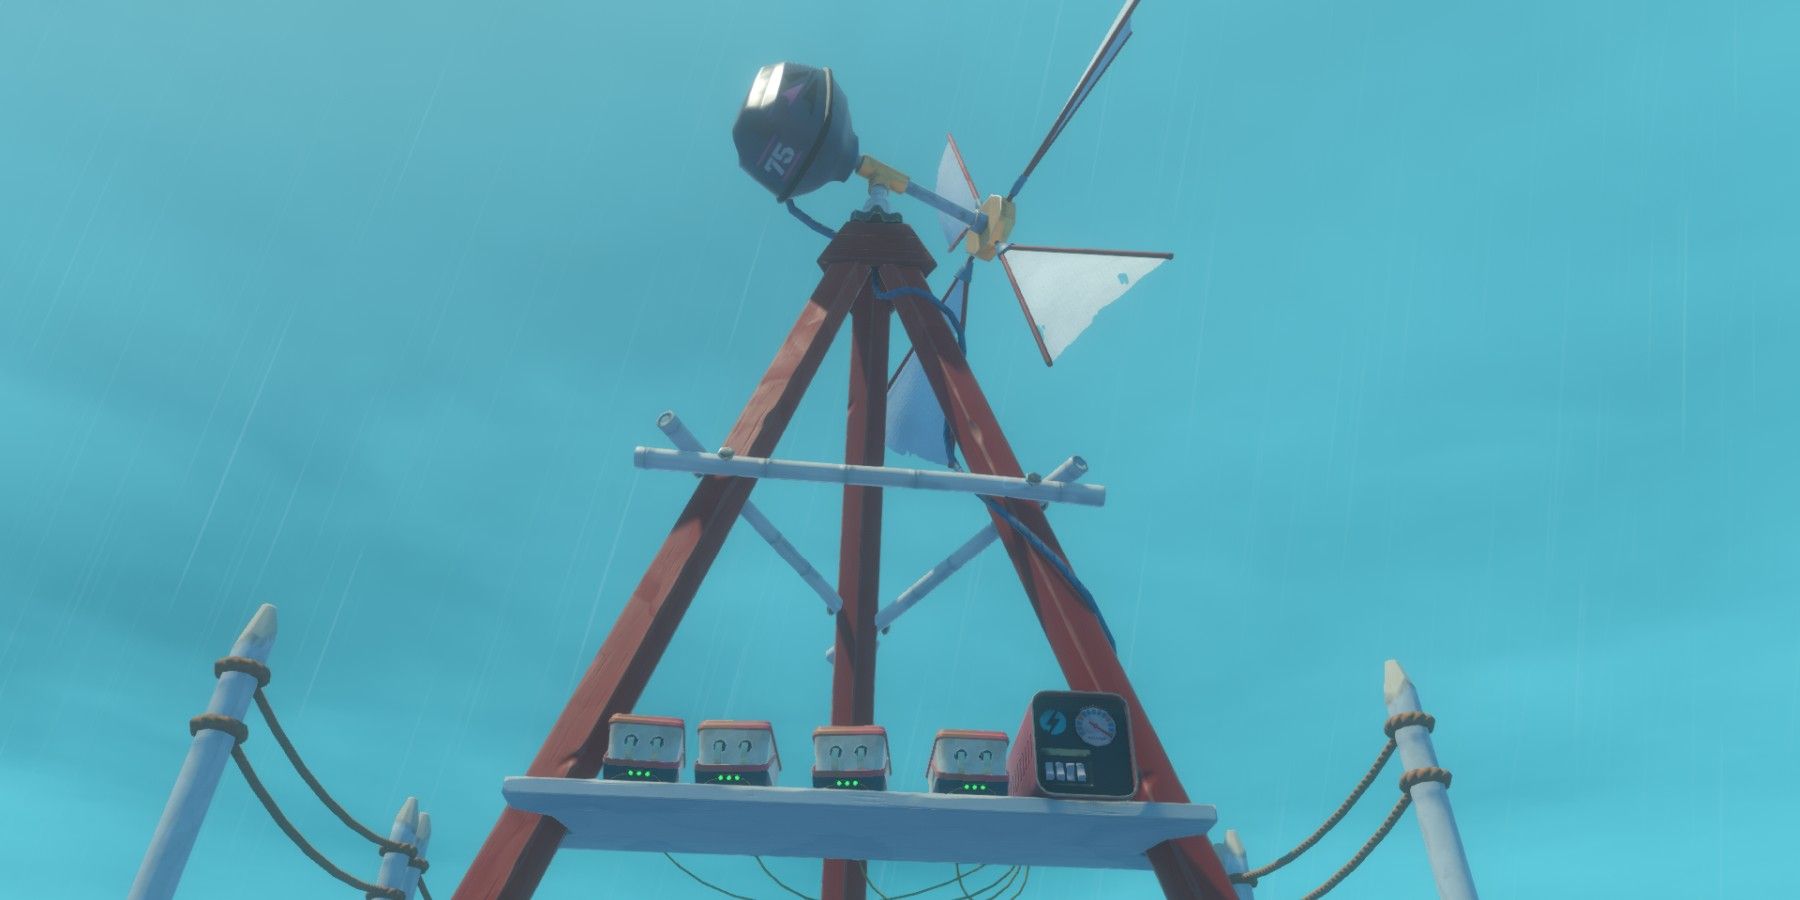 Raft Wind Turbine